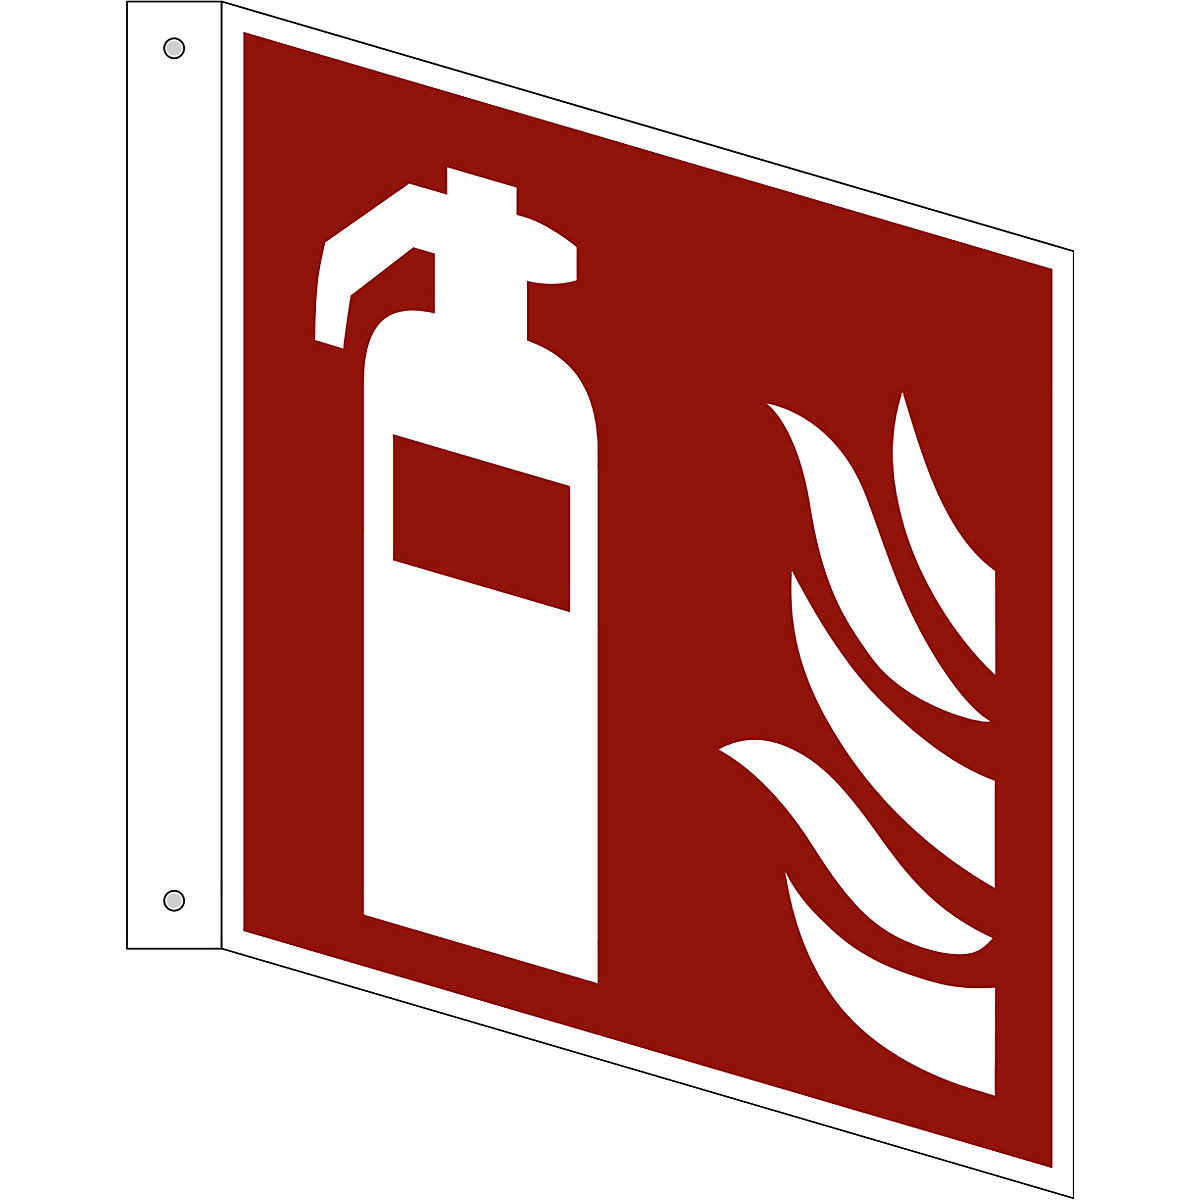 Značka pro ochranu proti požáru, hasicí přístroj, bal.j. 10 ks, hliník, vlajkový štítek, 200 x 200 mm